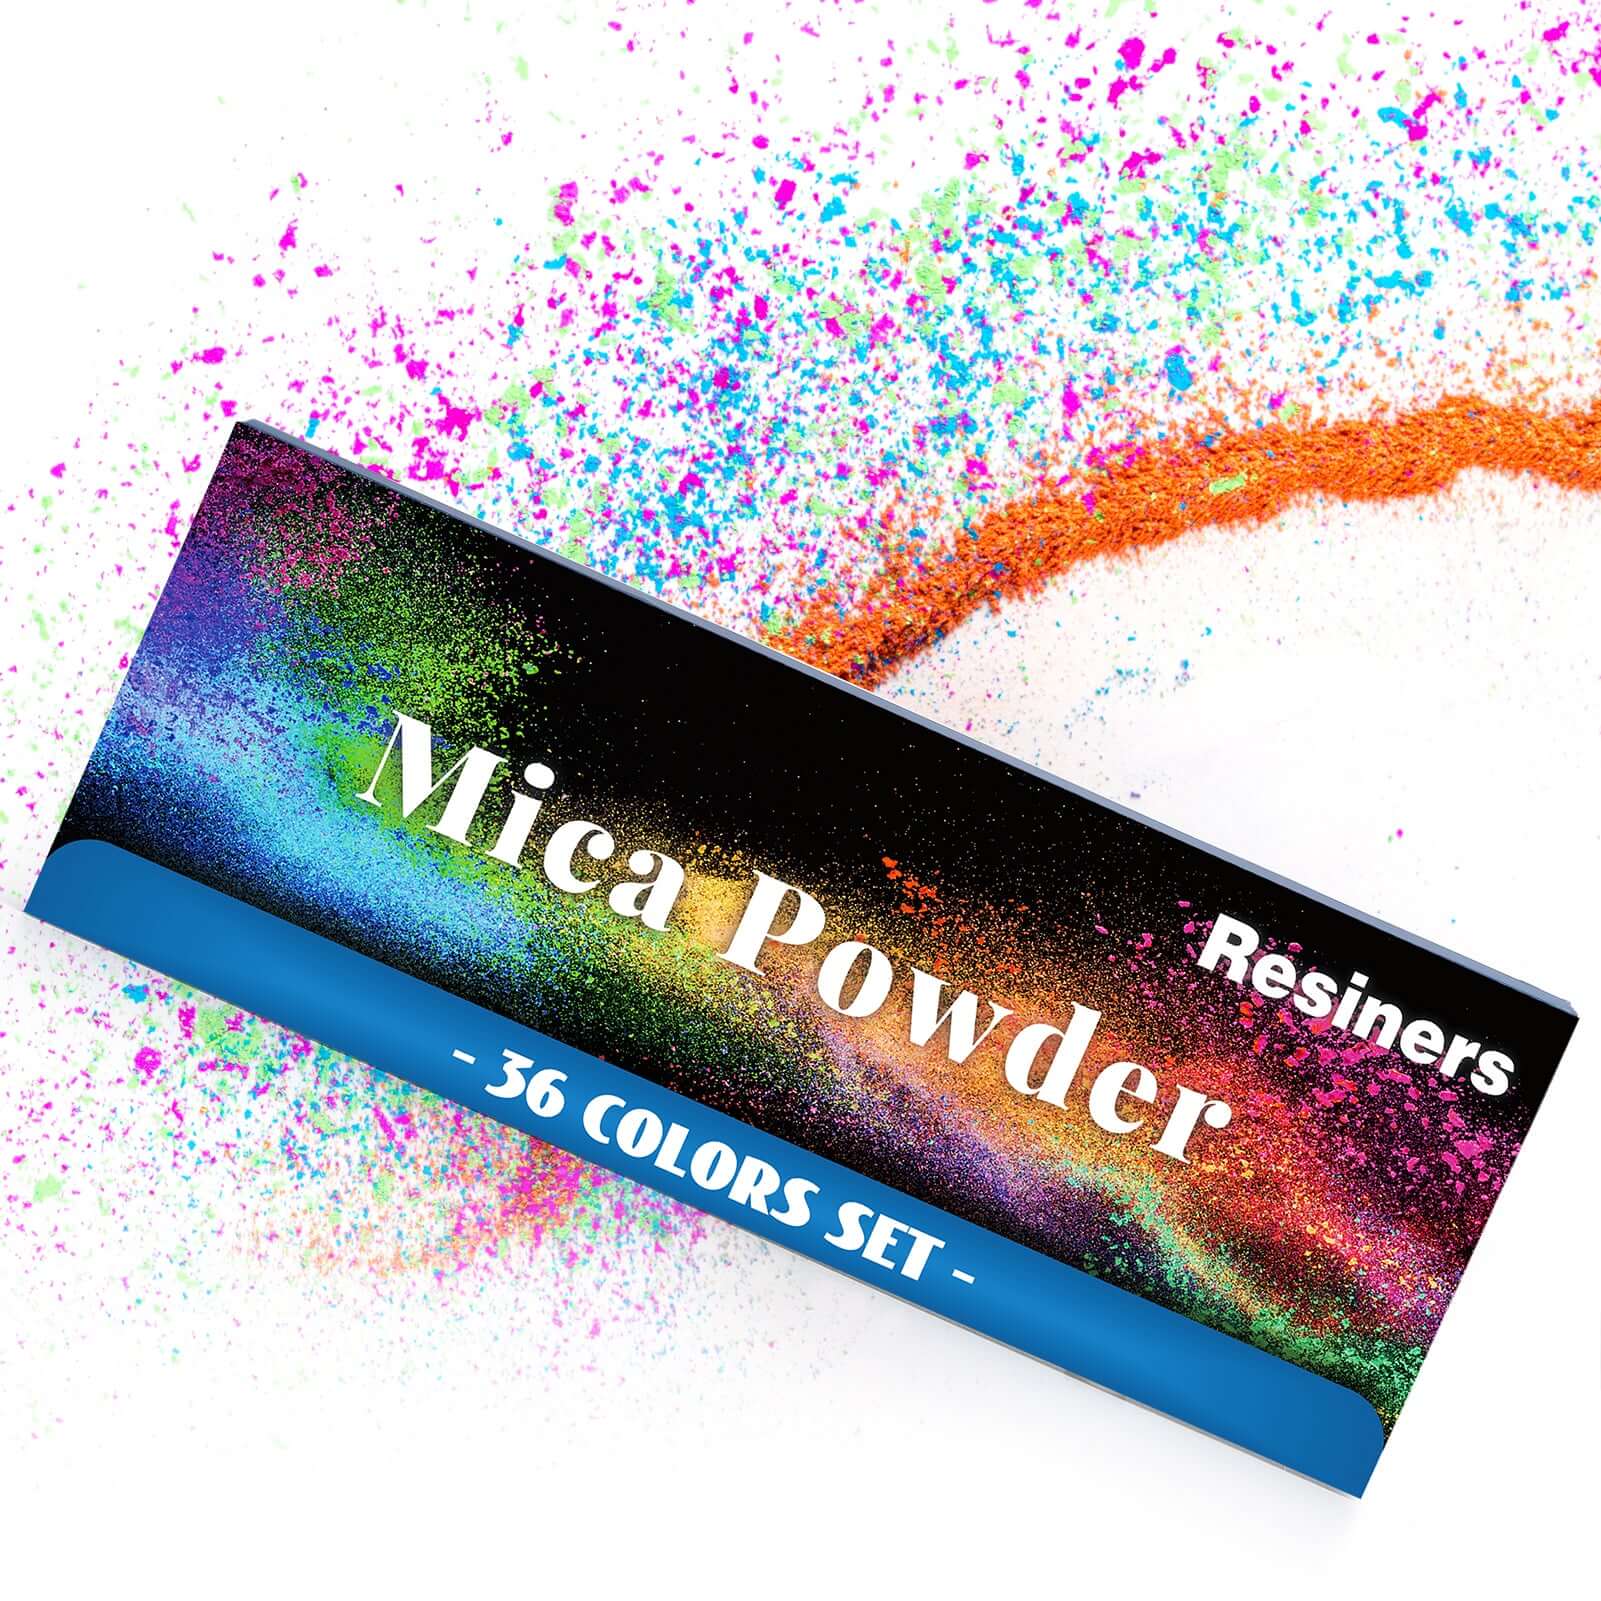 Resiners® 36 Colors Mica Powder Set - 0.1oz(3g)/Bag